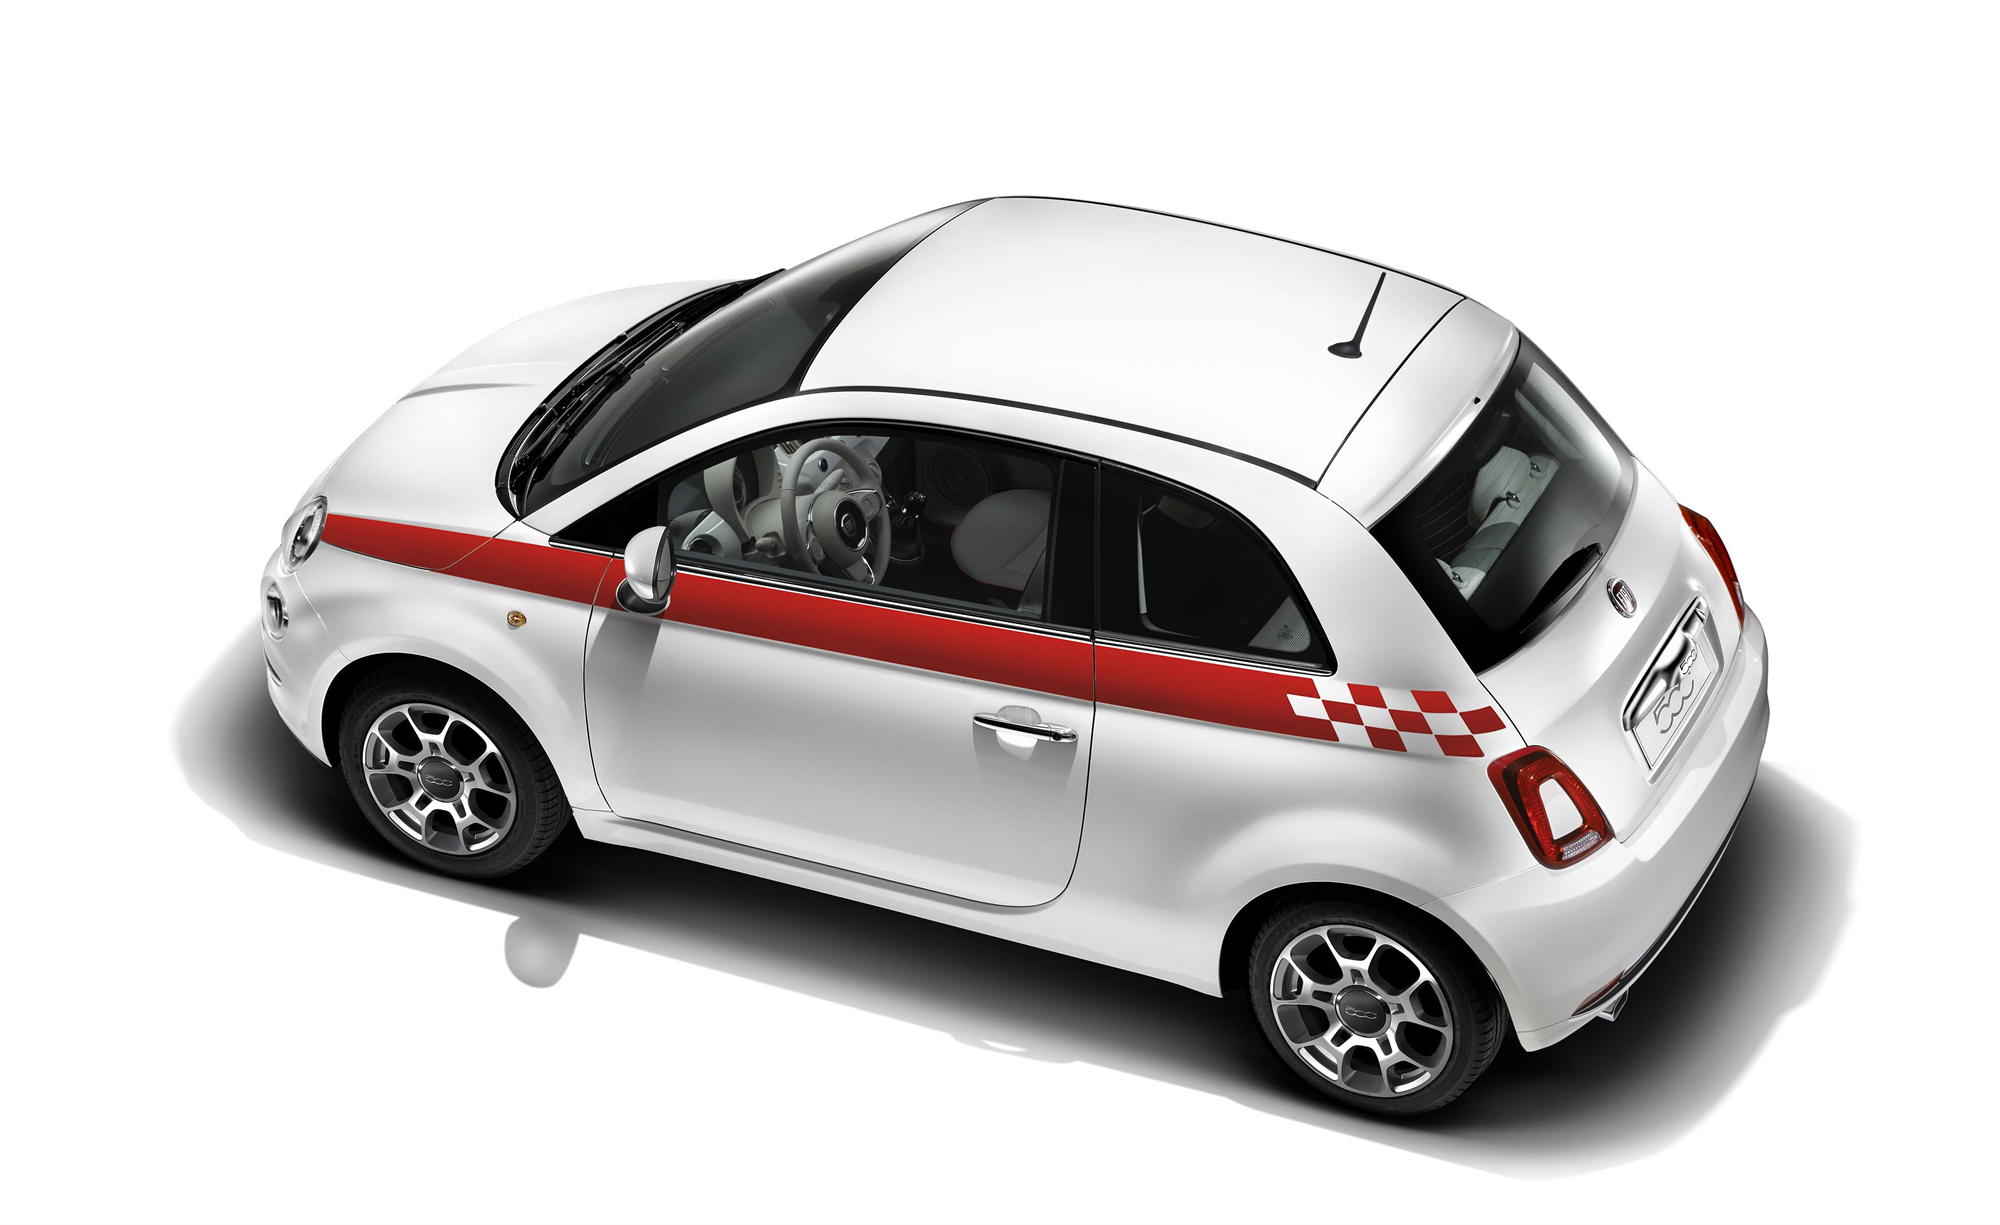 Porte assurance voiture New Fiat 500 étui méga vignette Stickers auto rétro